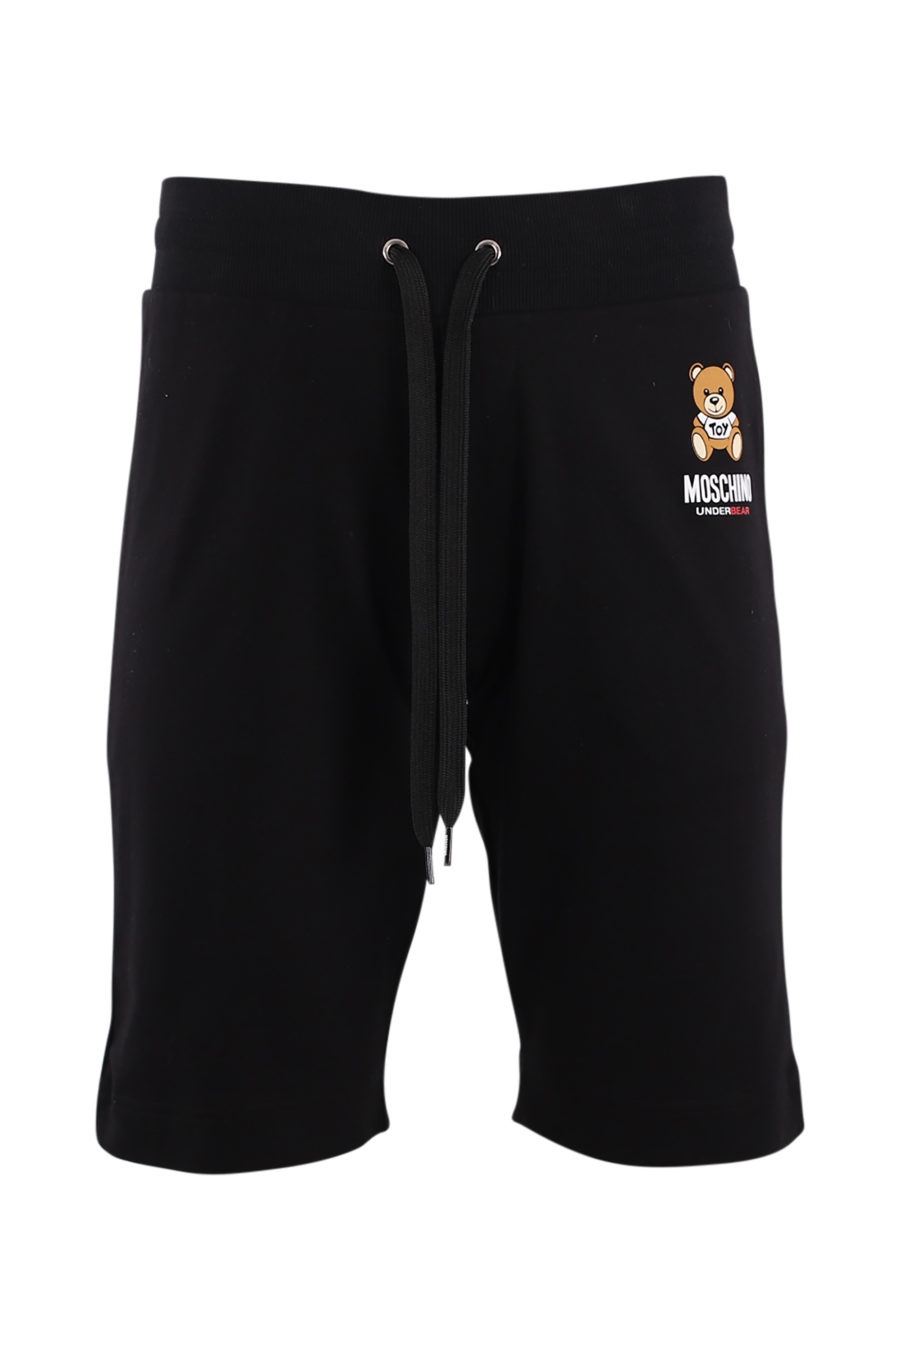 Pantalón corto negro con logo "underbear" - IMG 8830